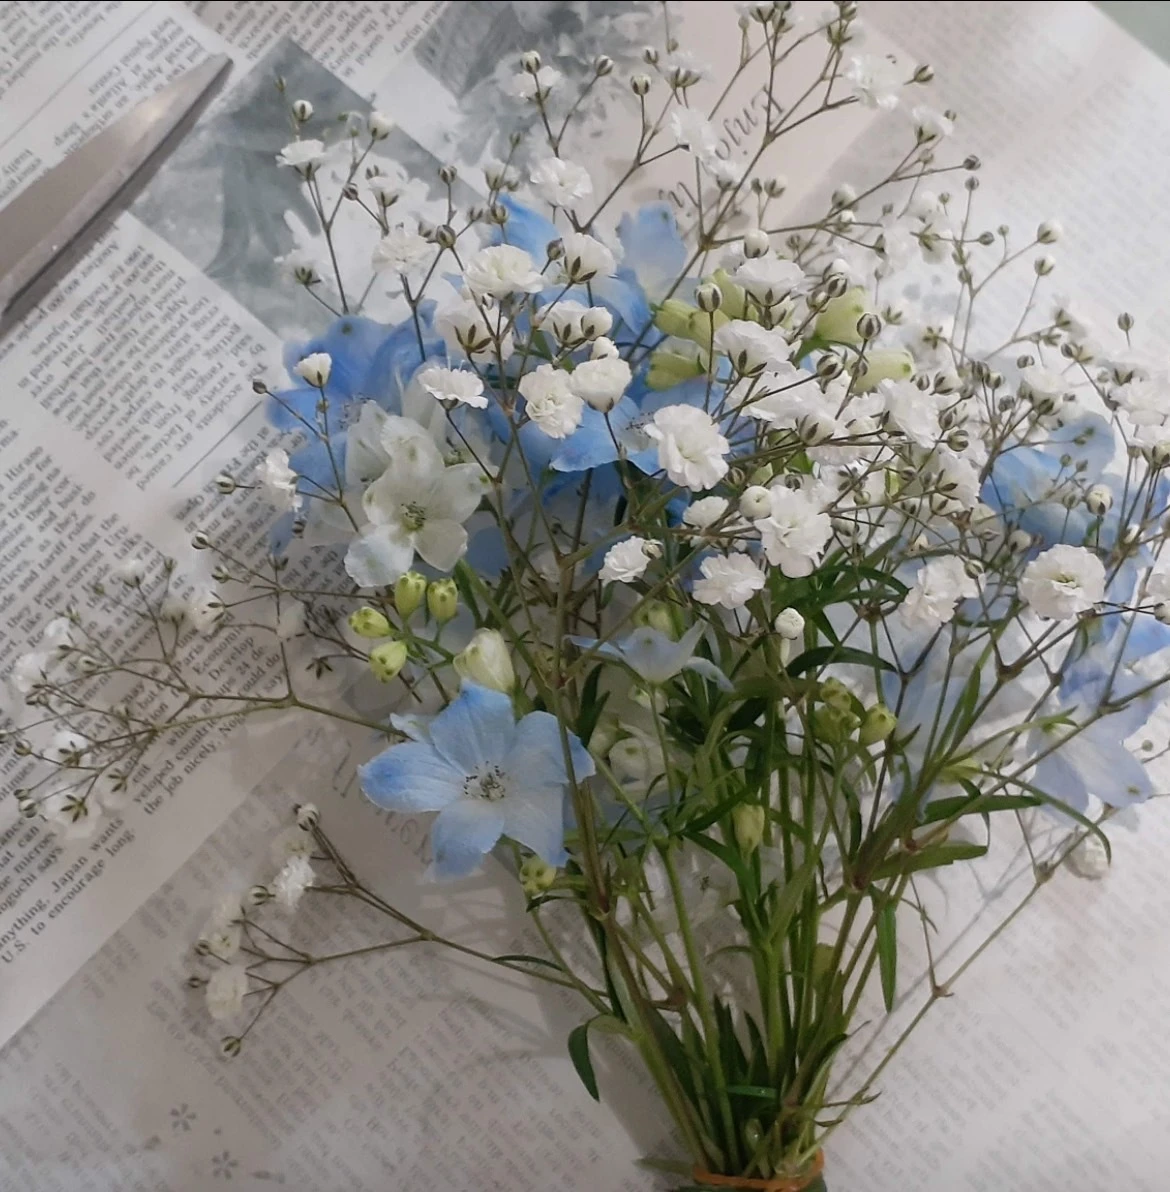 お気に入りのお花屋さんで出会ったカスミソウと水色のお花。